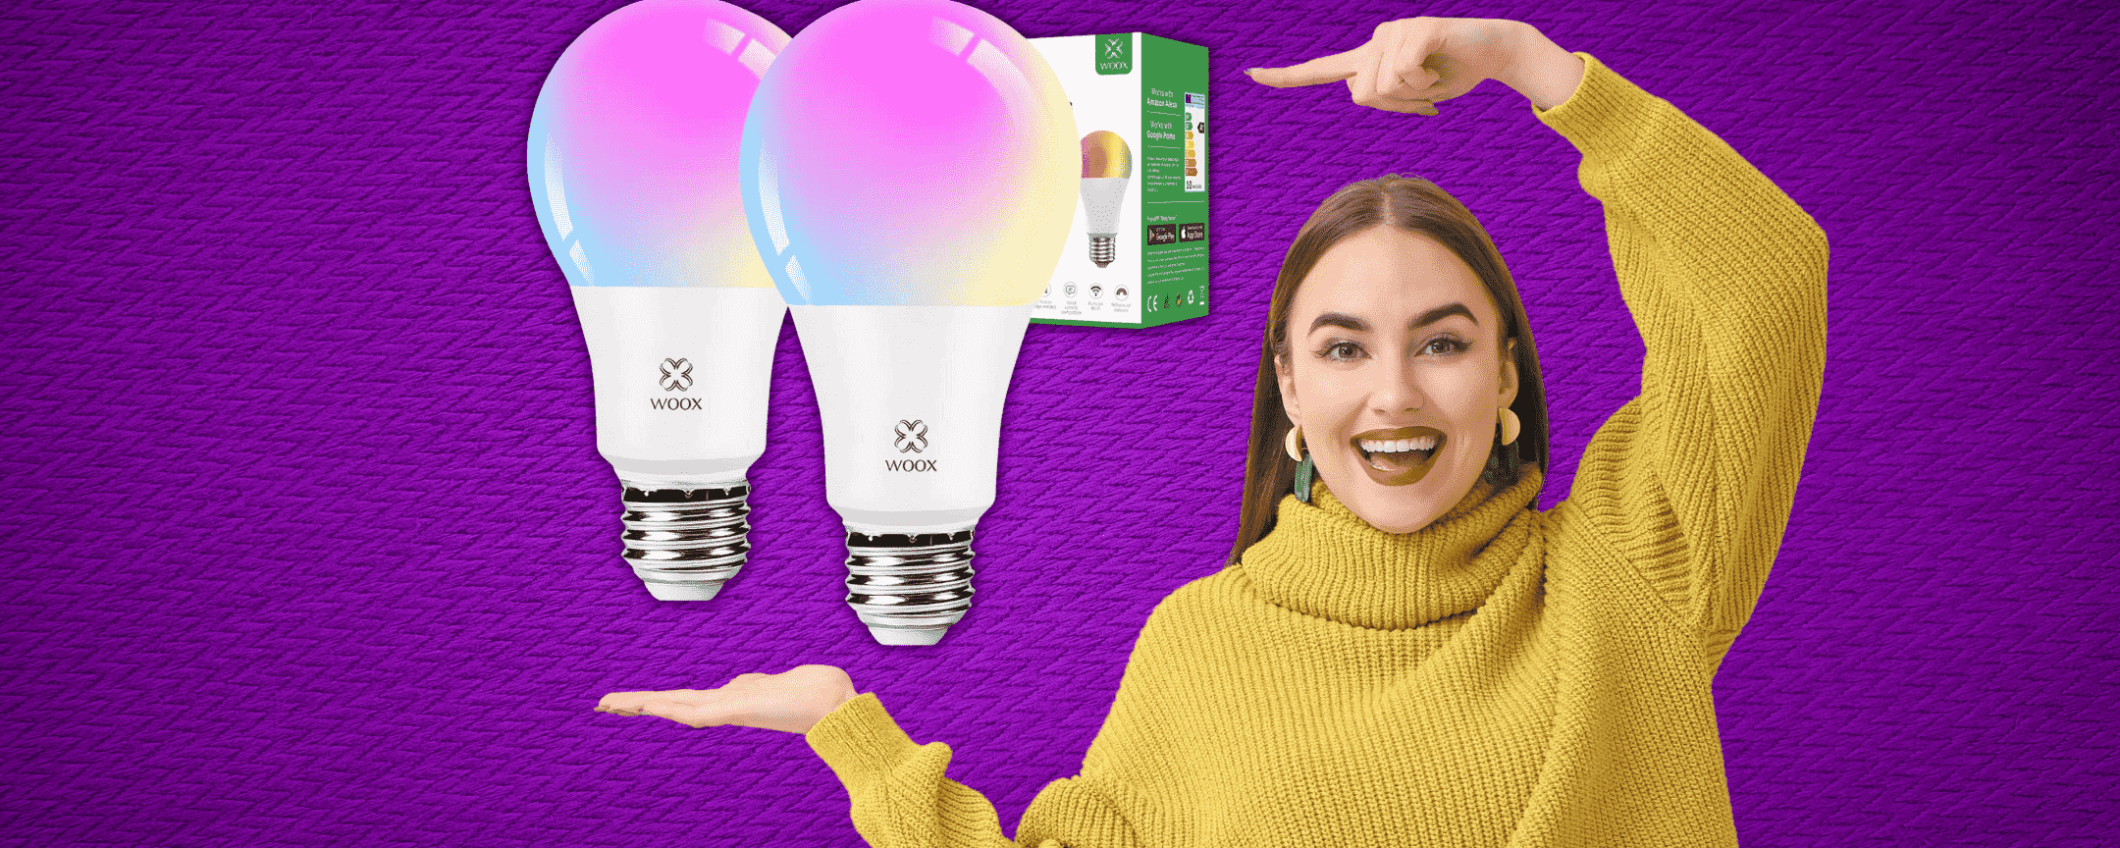 Personalizza la tua stanza con queste Lampadine LED Smart in sconto